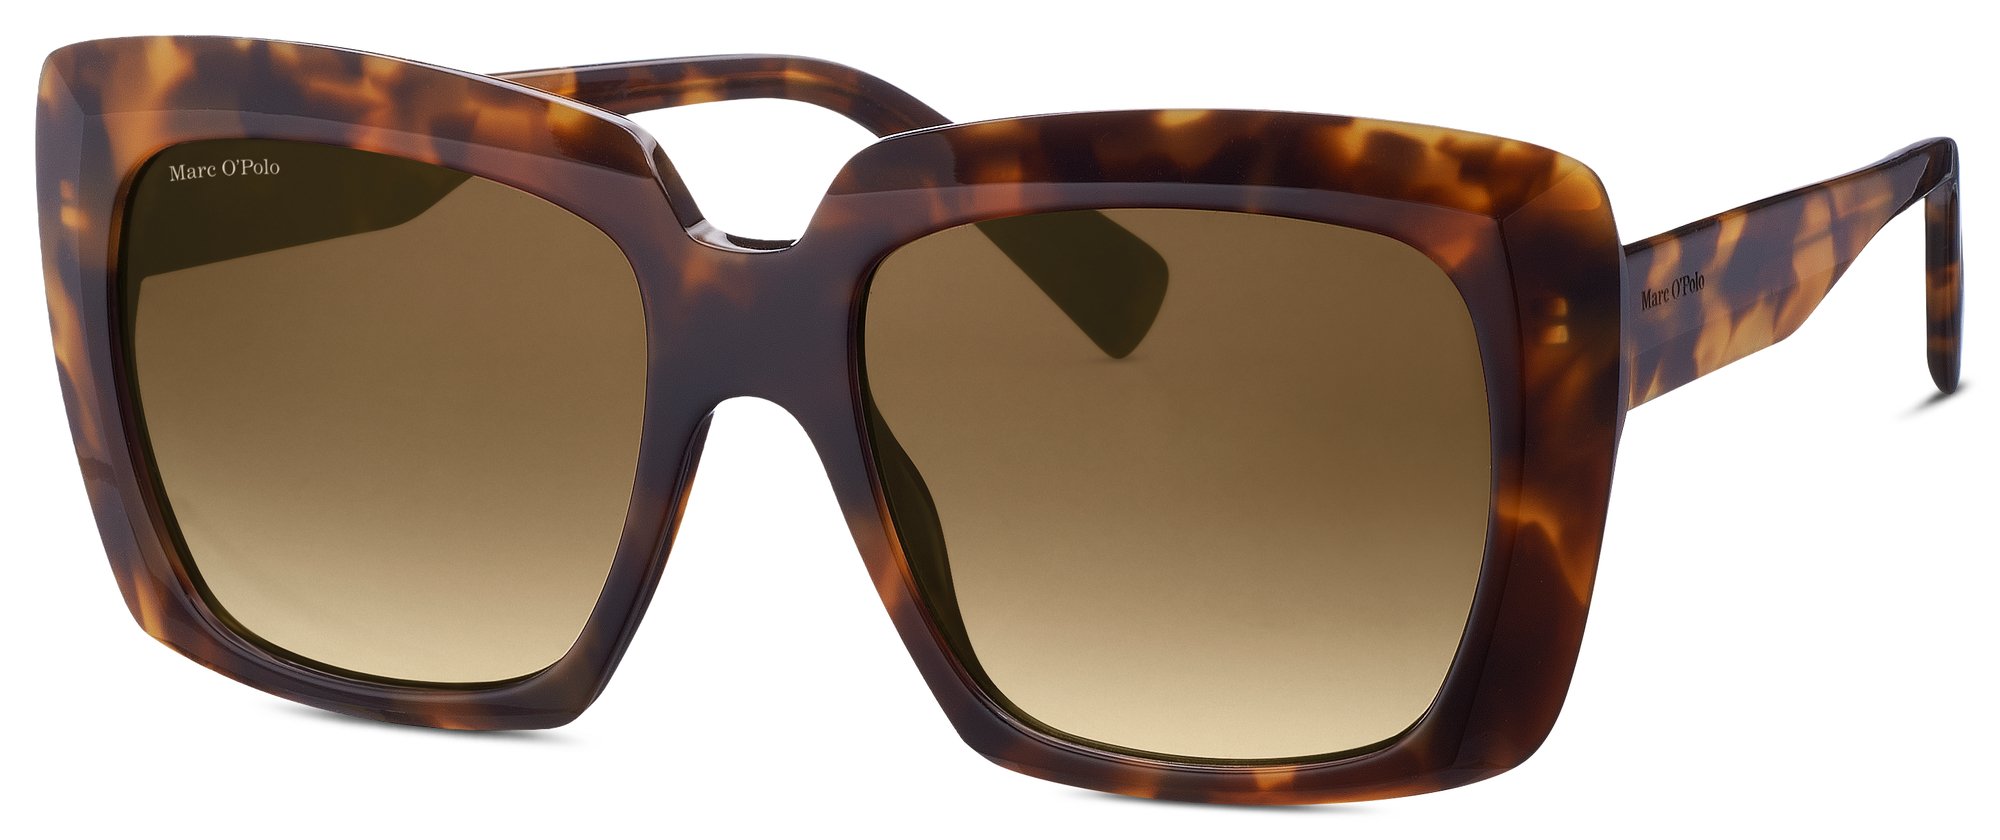 Das Bild zeigt die Sonnenbrille 506198 60 von der Marke Marc O‘Polo in havanna.